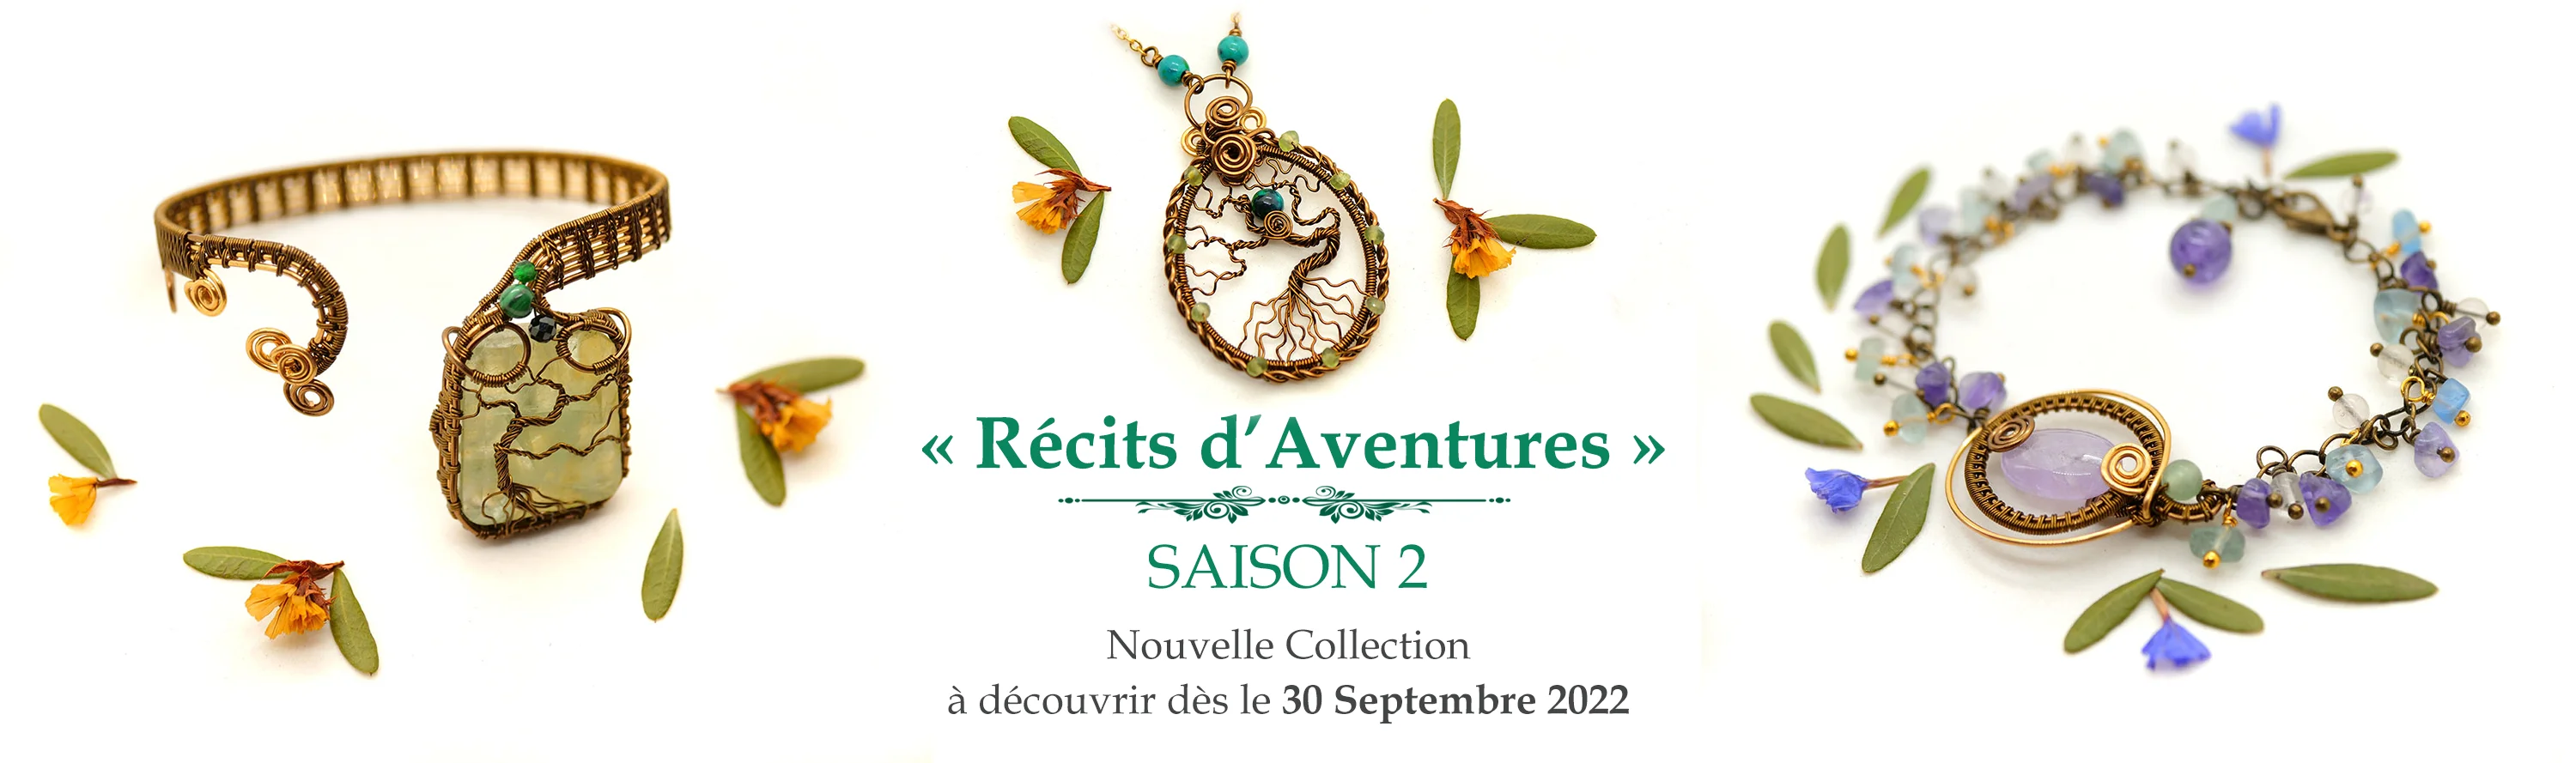 Accueil du site MYSTYOS - Collection bijoux septembre 2022 : "Récits d'Aventures, Saison 2"